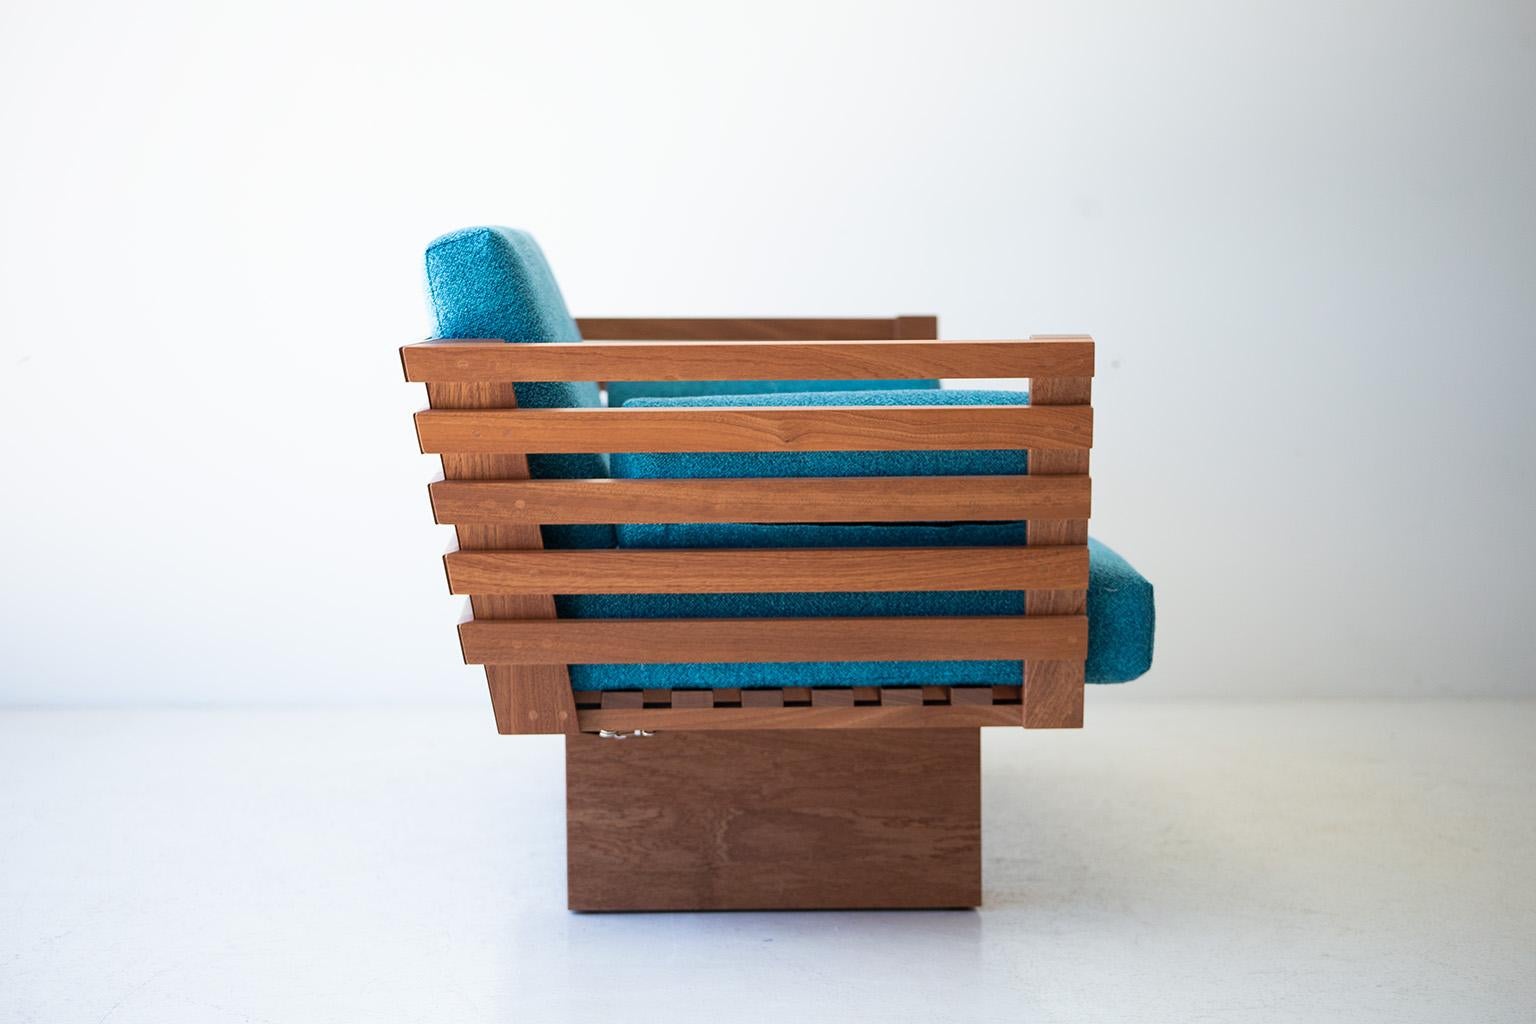 Dieses moderne Terrassenmöbel - Suelo Slatted Loveseat ist wunderschön in Ohio, USA, gefertigt. Diese Silhouette ist einfach, modern und schlank mit bequemen Rücken- und Sitzkissen. Der Holzrahmen ist für den Einsatz im Freien geeignet und mit einer